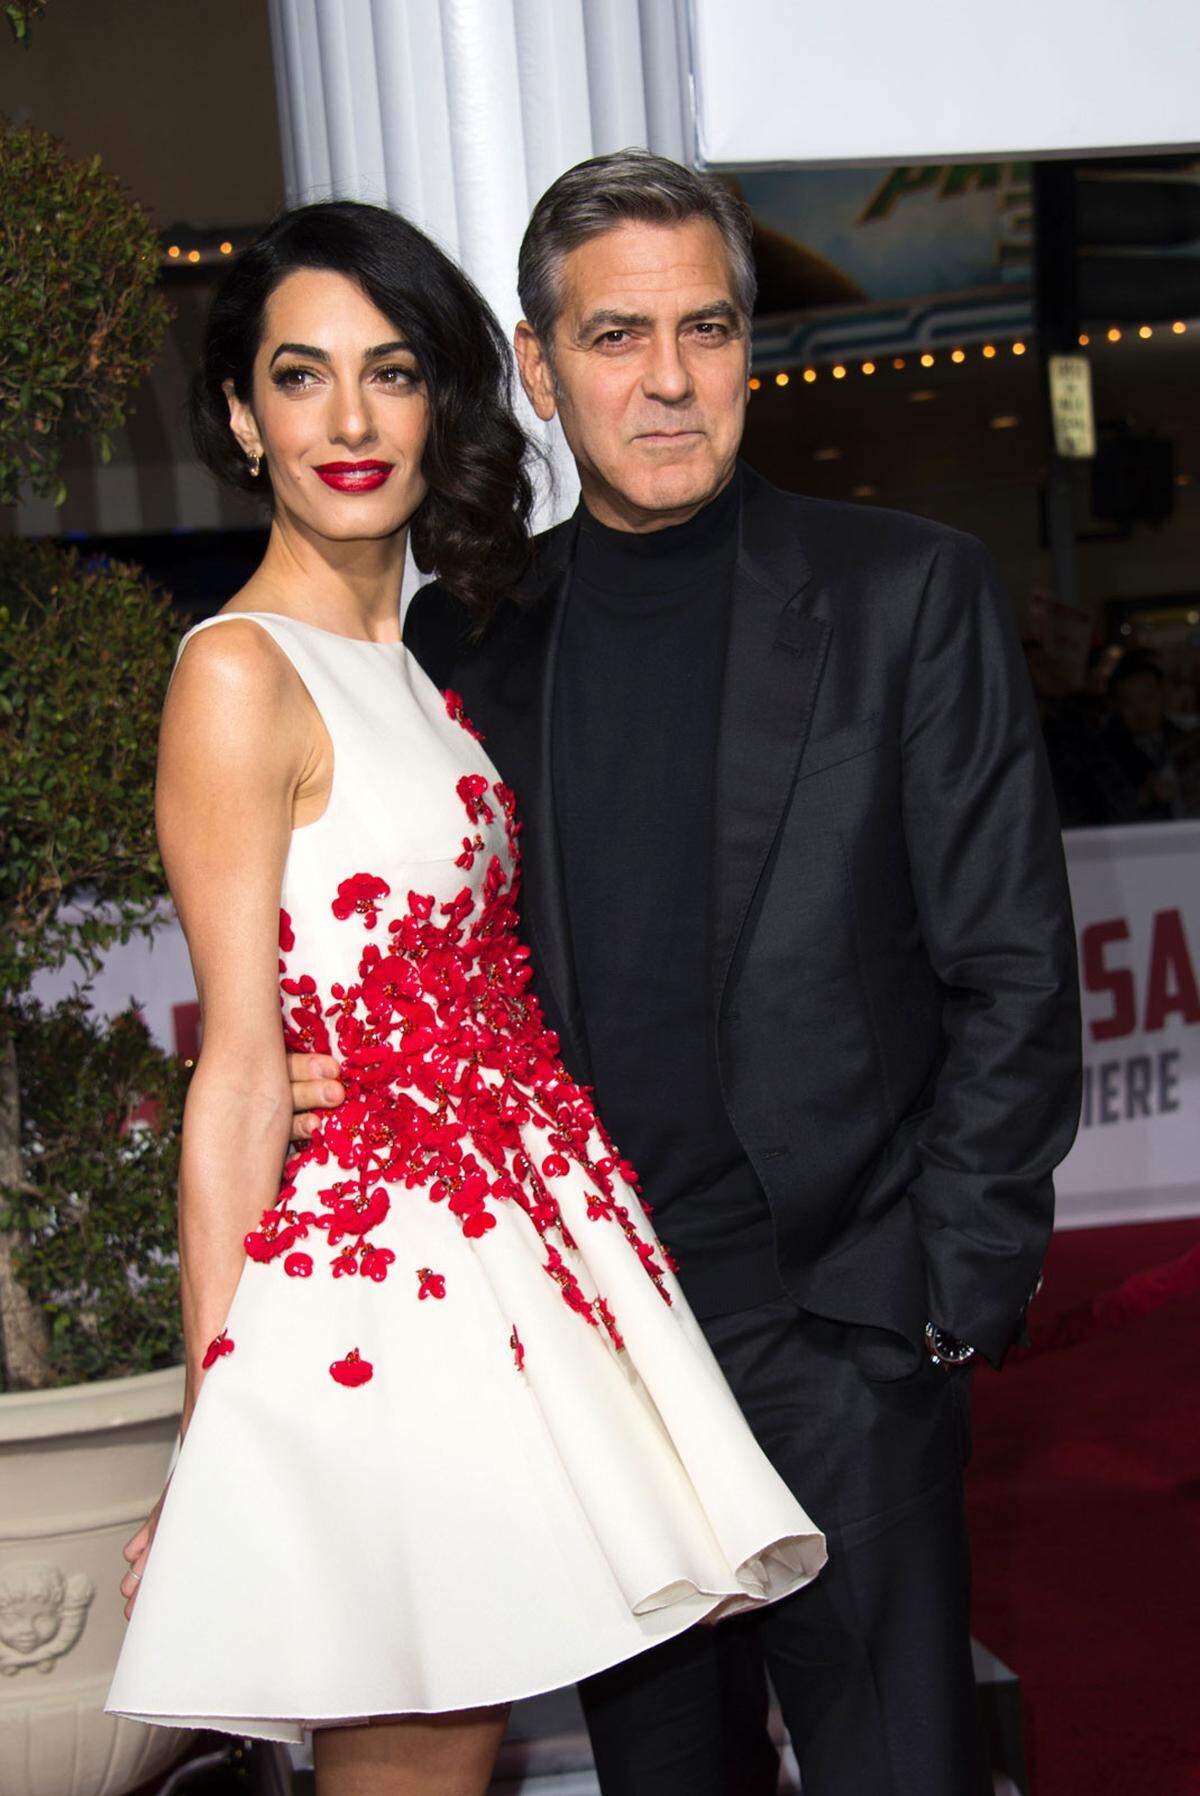 Hollywood-Star George Clooney wird mit 55 Jahren erstmals Vater und dann gleich in doppelter Ausführung. Seine Frau Amal erwartet Berichten zufolge Zwillinge. Der Schauspieler Clooney und die britisch-libanesische Anwältin sind seit 2014 verheiratet. Im Club ergrauter Zwillingsväter ist Clooney in bester Gesellschaft.